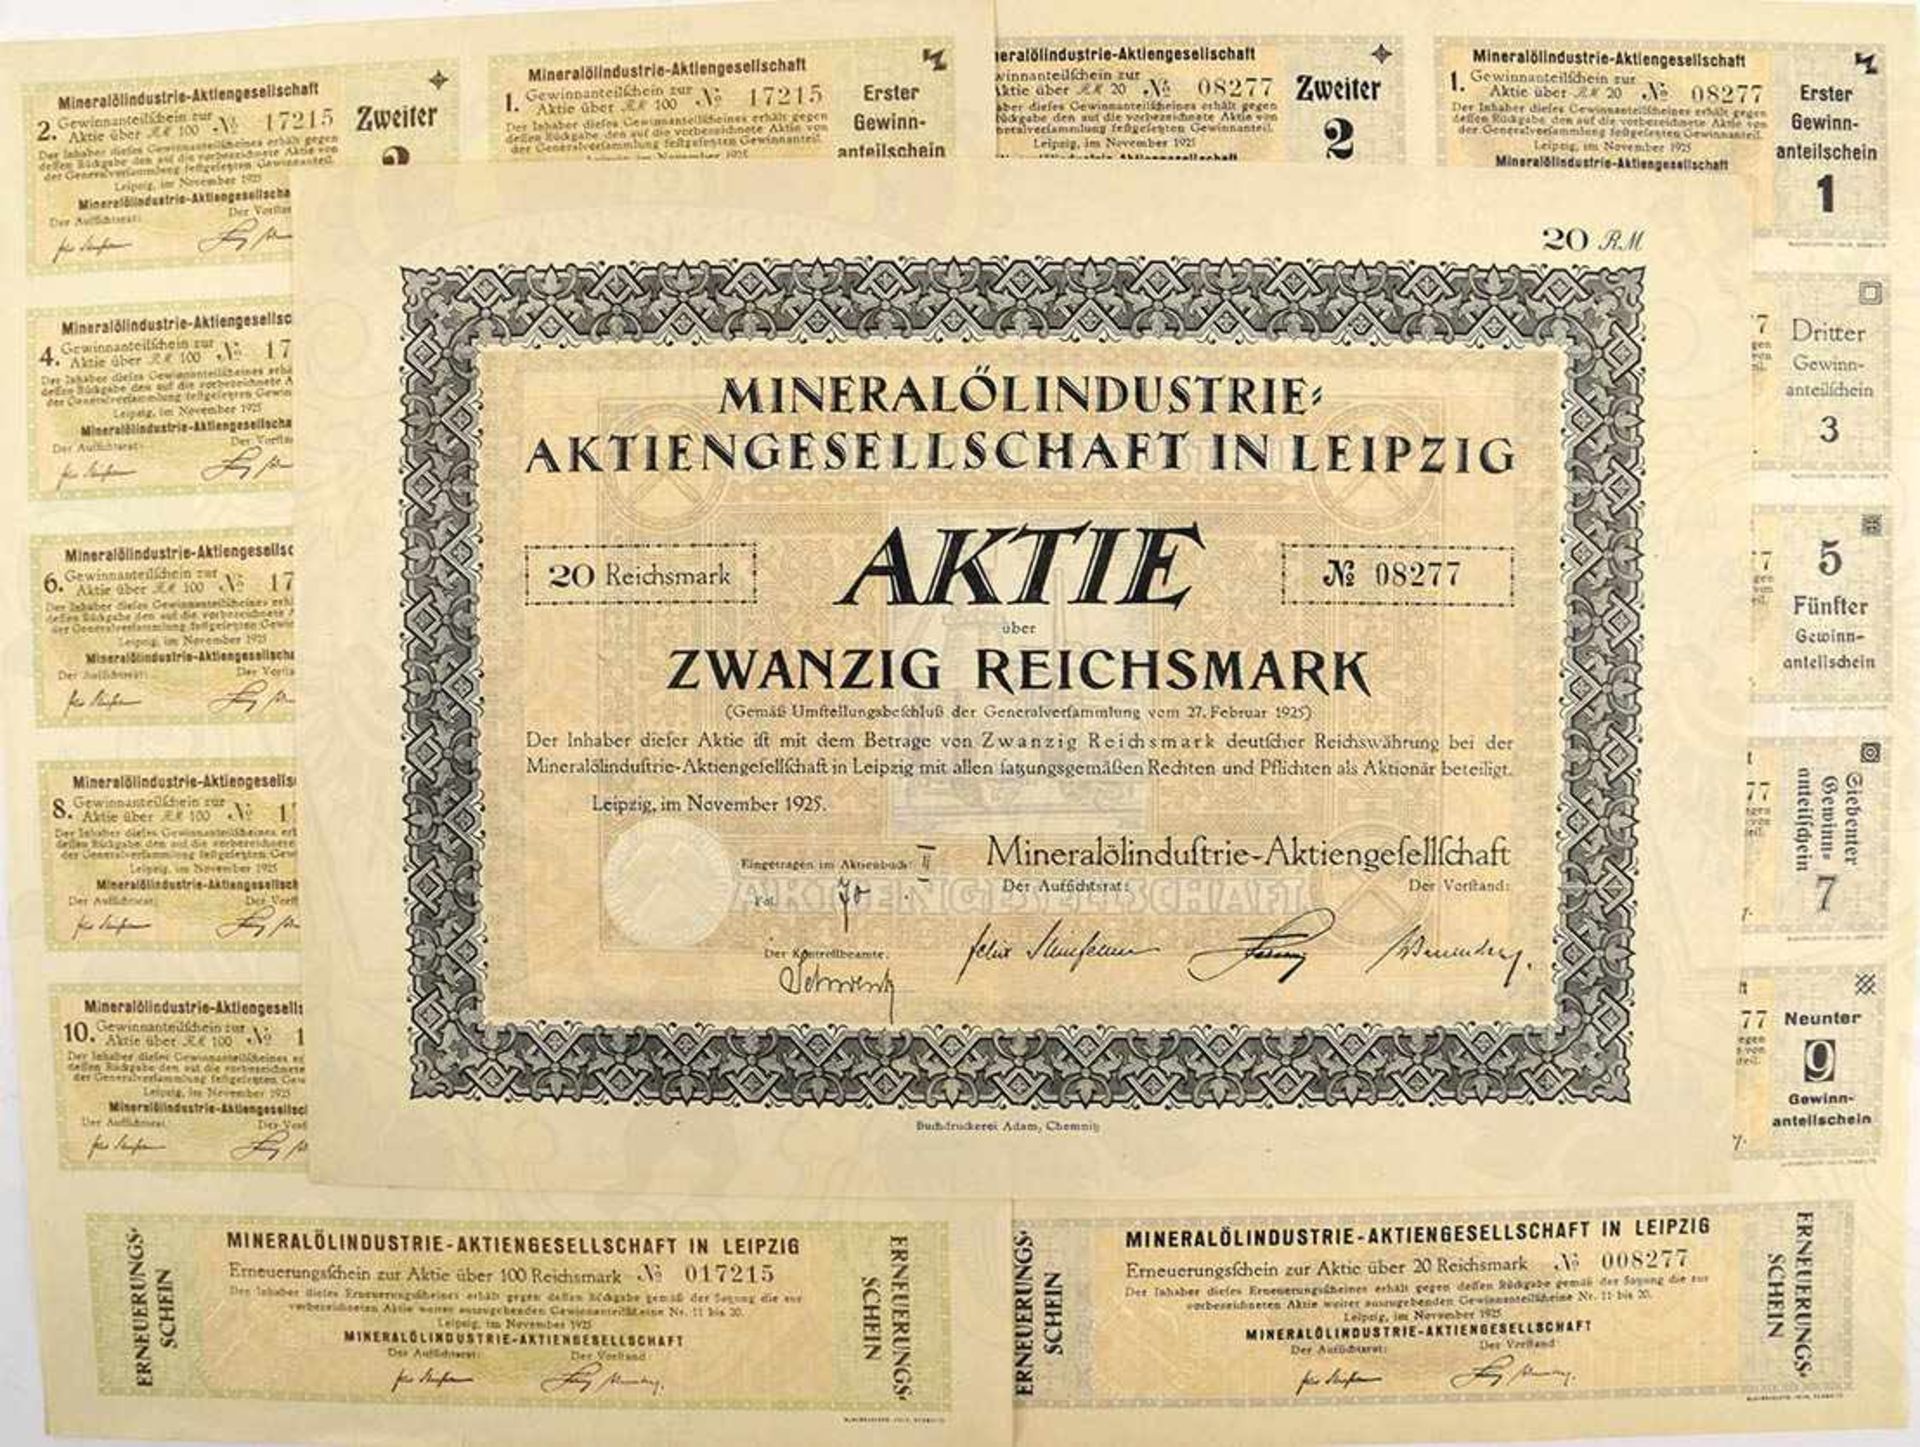 AKTIE ÜBER 20 REICHSMARK, Mineralölindustrie A.G. Leipzig 1925, m. Bogen 10 Anteilscheine; dazu